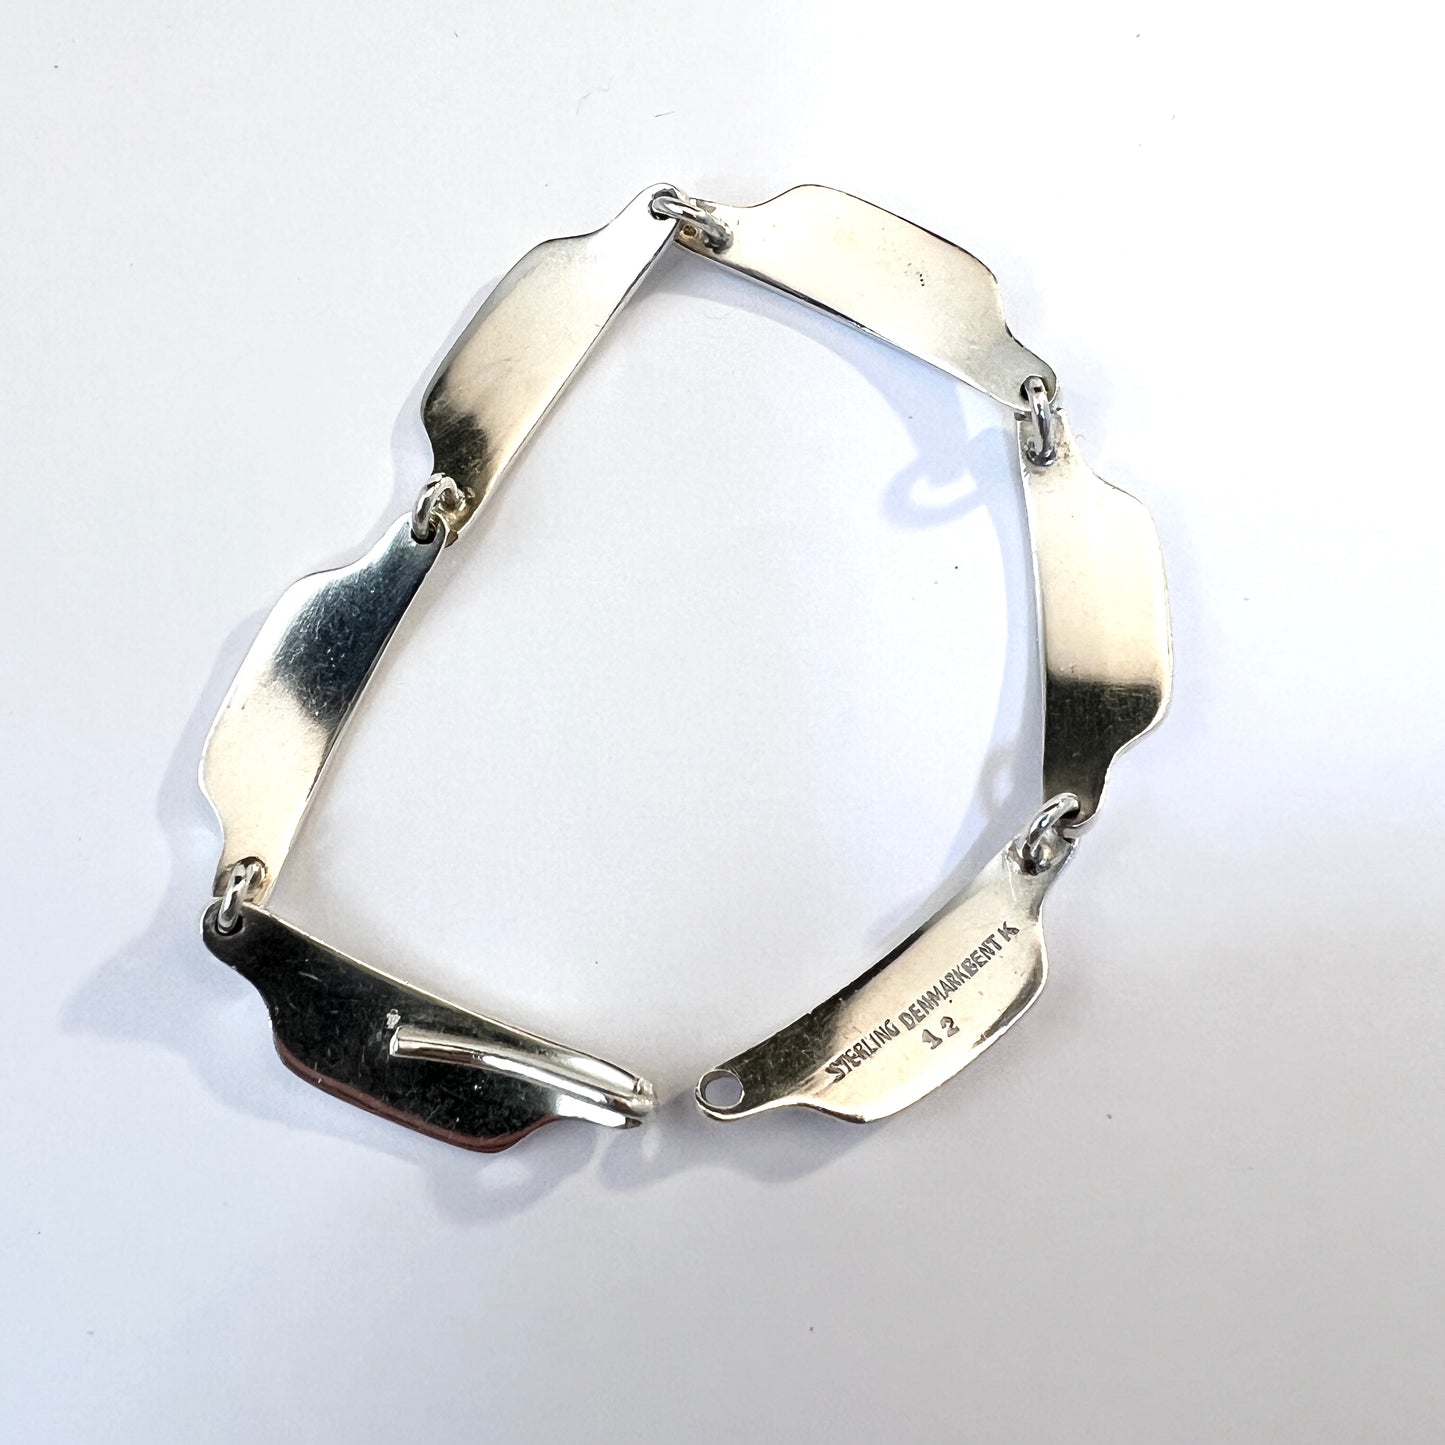 Bent Knudsen, Denmark 1960s Design no 12 Sterling Silver Link Bracelet.